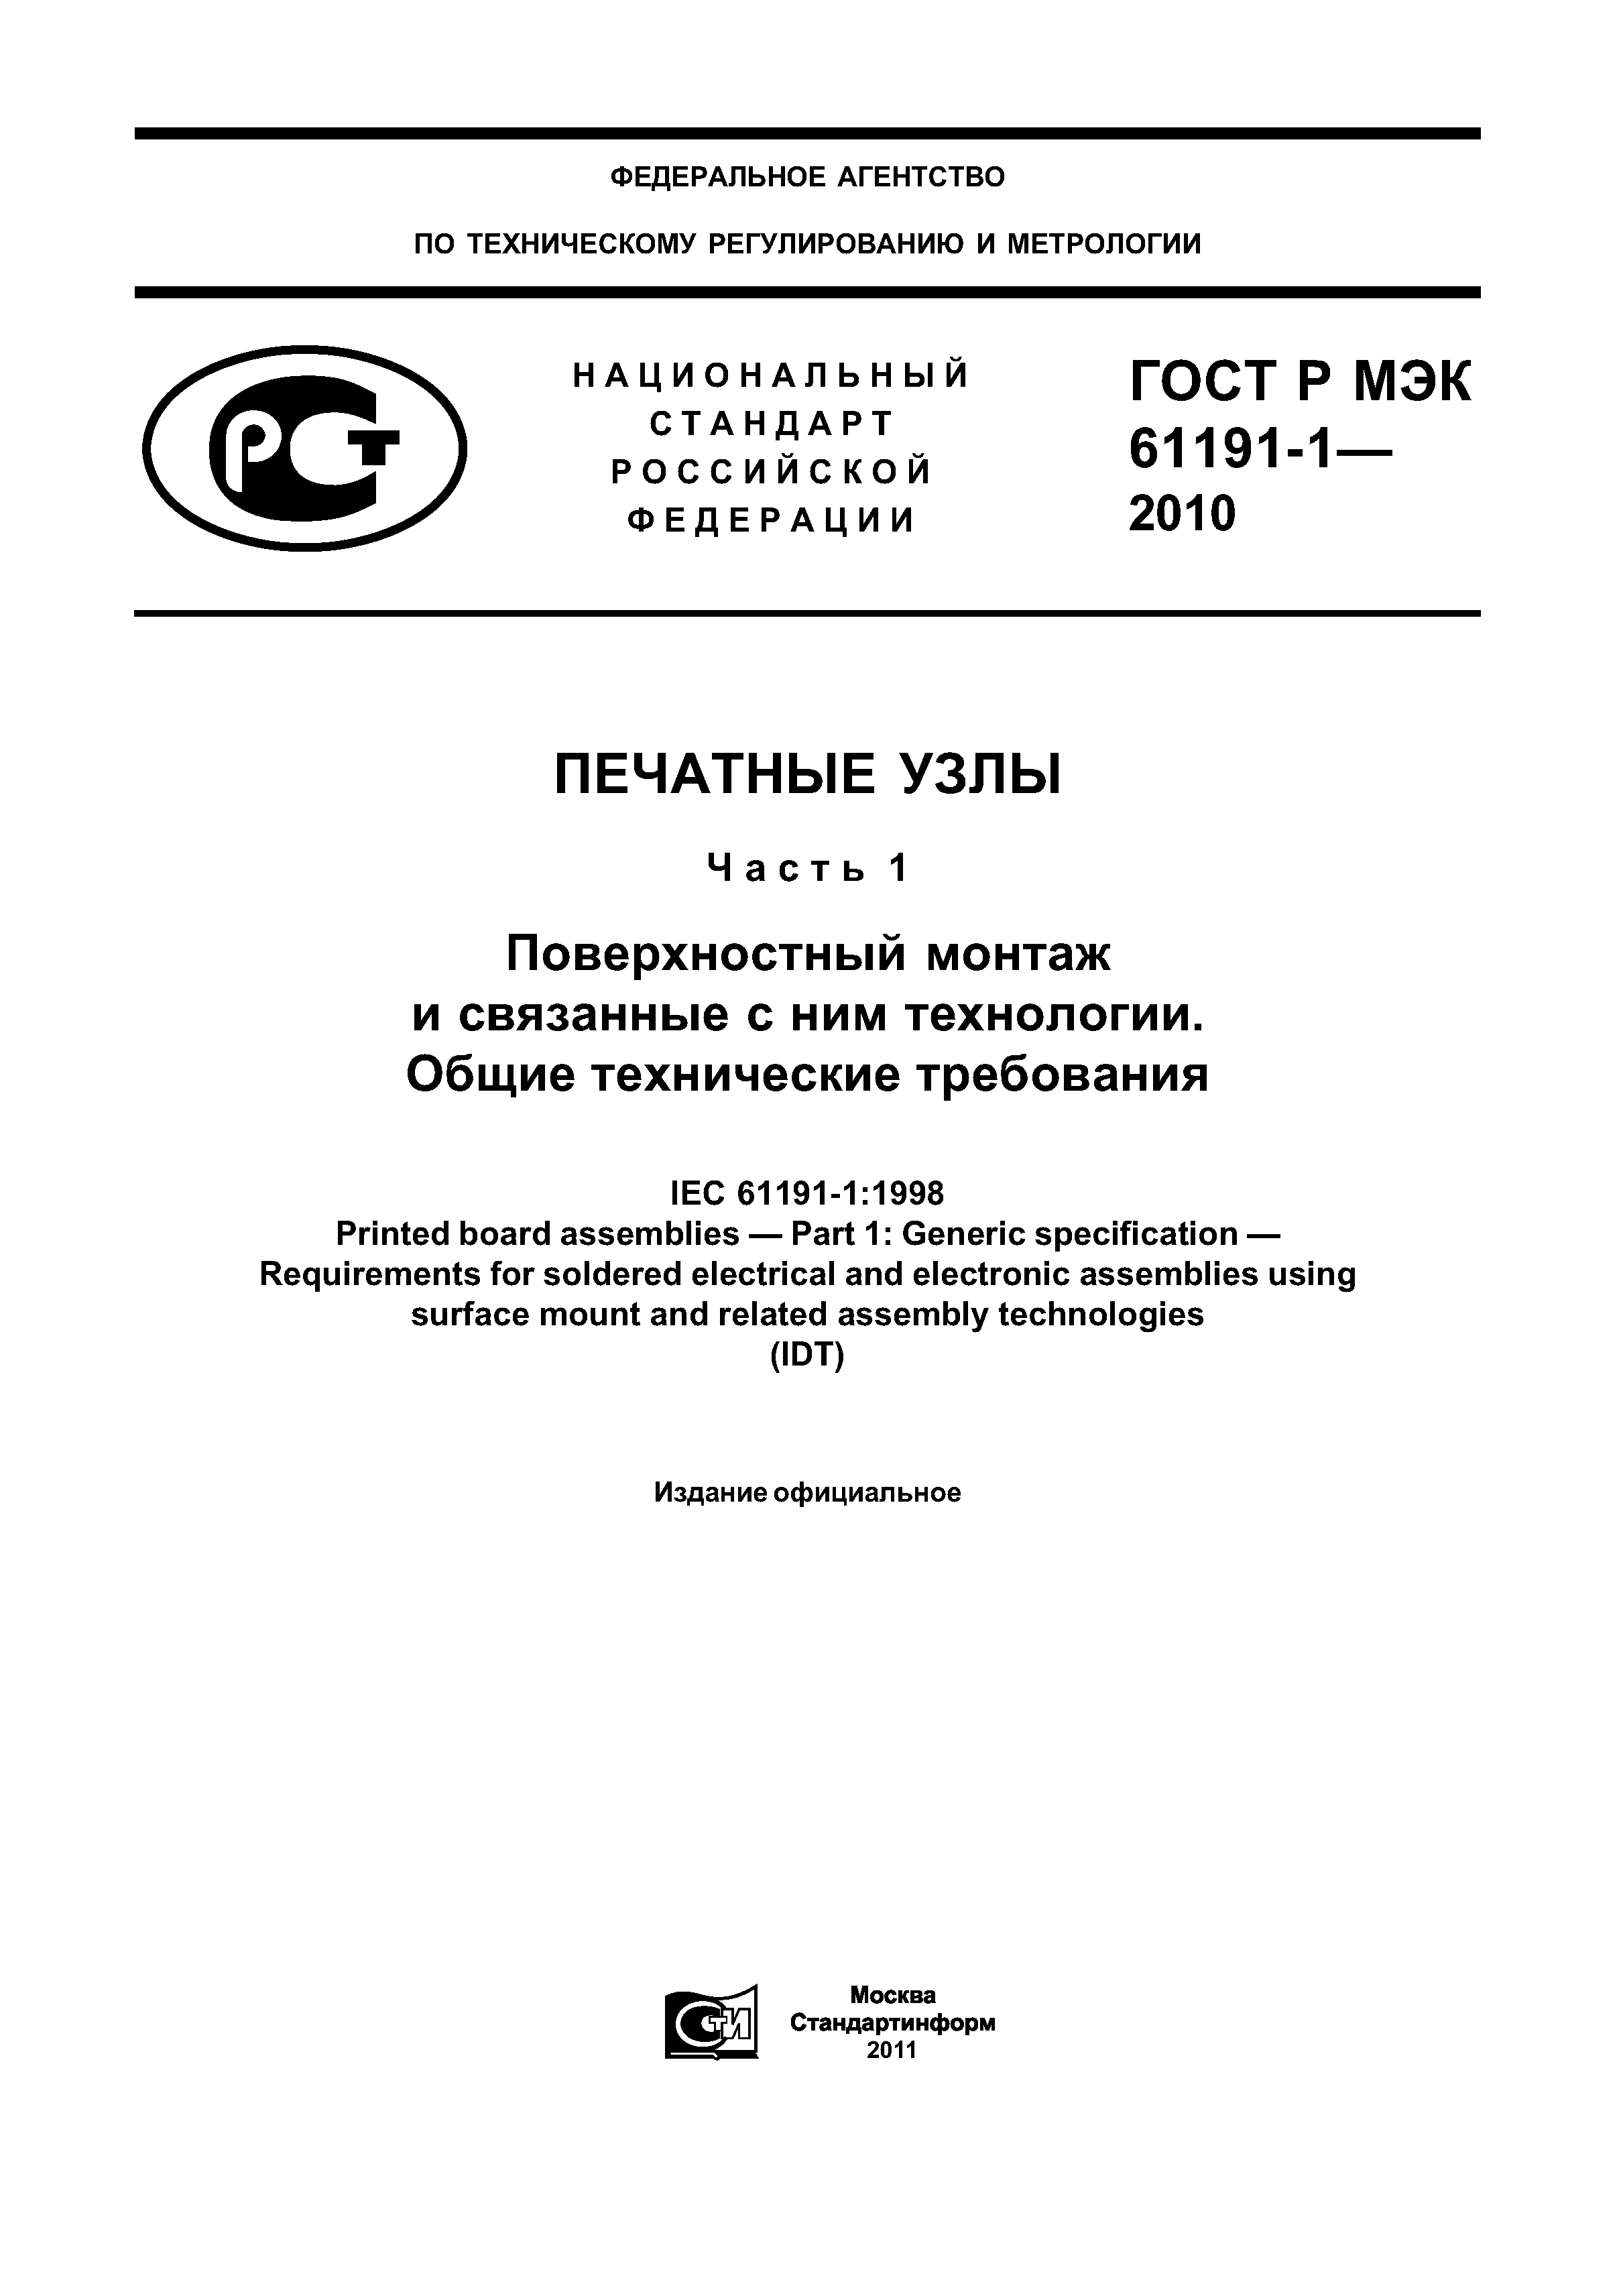 ГОСТ Р МЭК 61191-1-2010